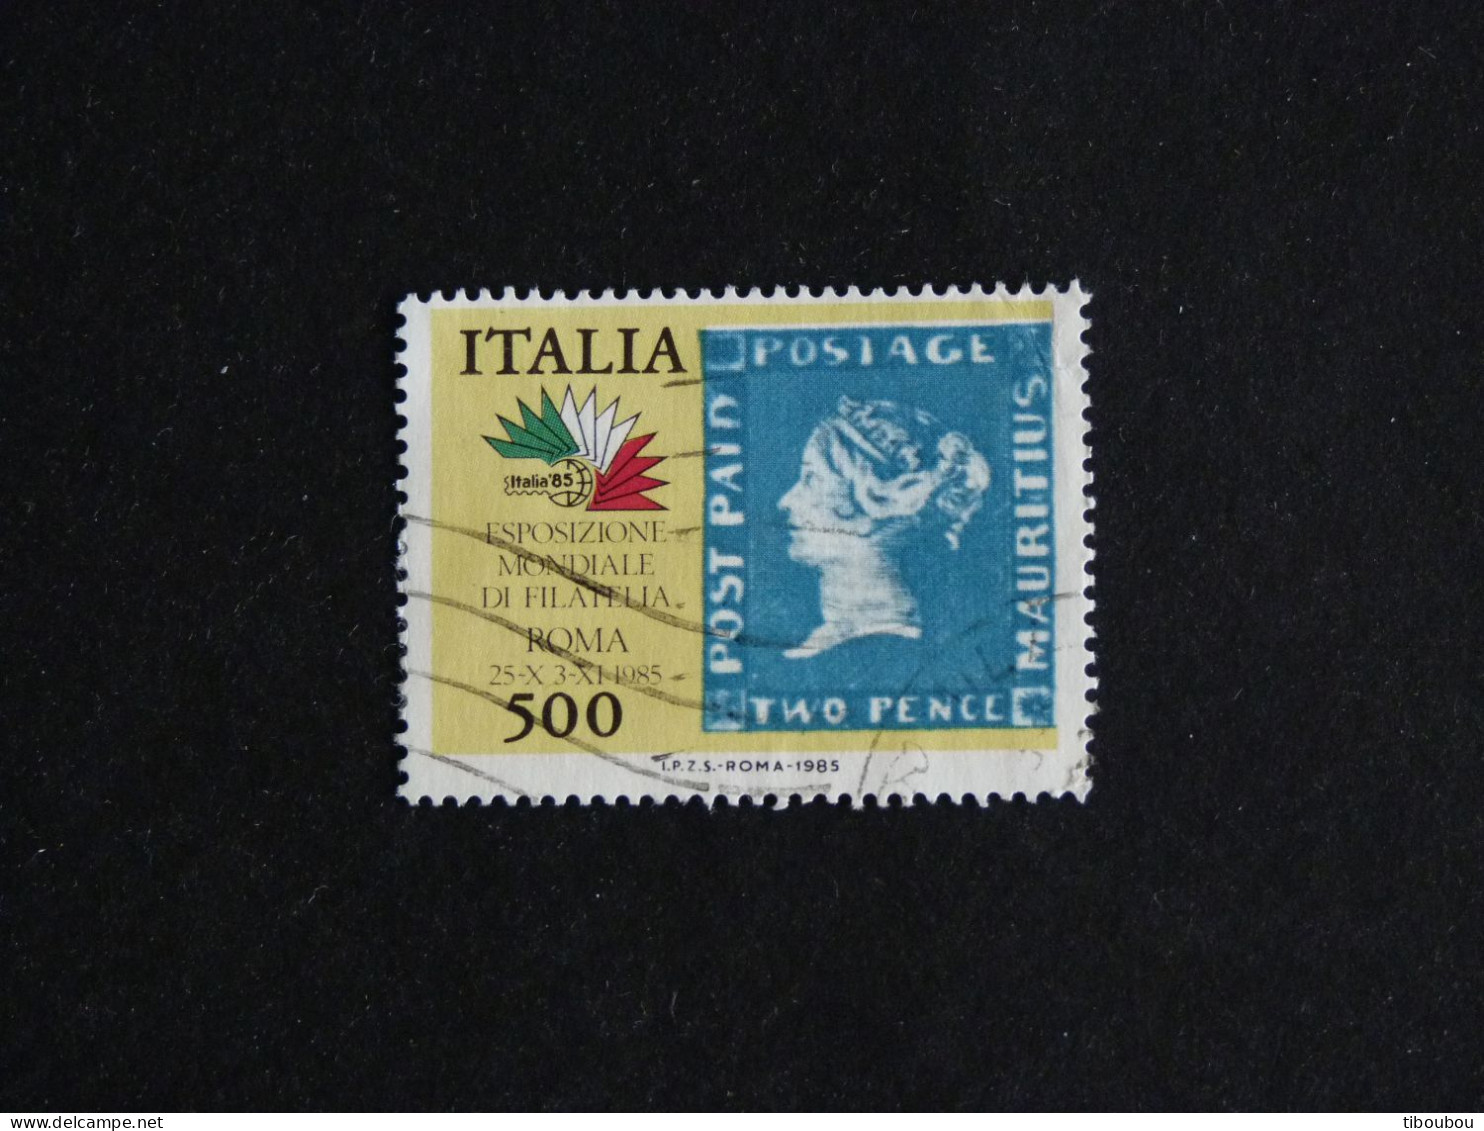 ITALIE ITALIA YT 1690 OBLITERE - ITALIA 85 EXPOSITION PHILATELIQUE TIMBRE SUR TIMBRE - 1981-90: Oblitérés